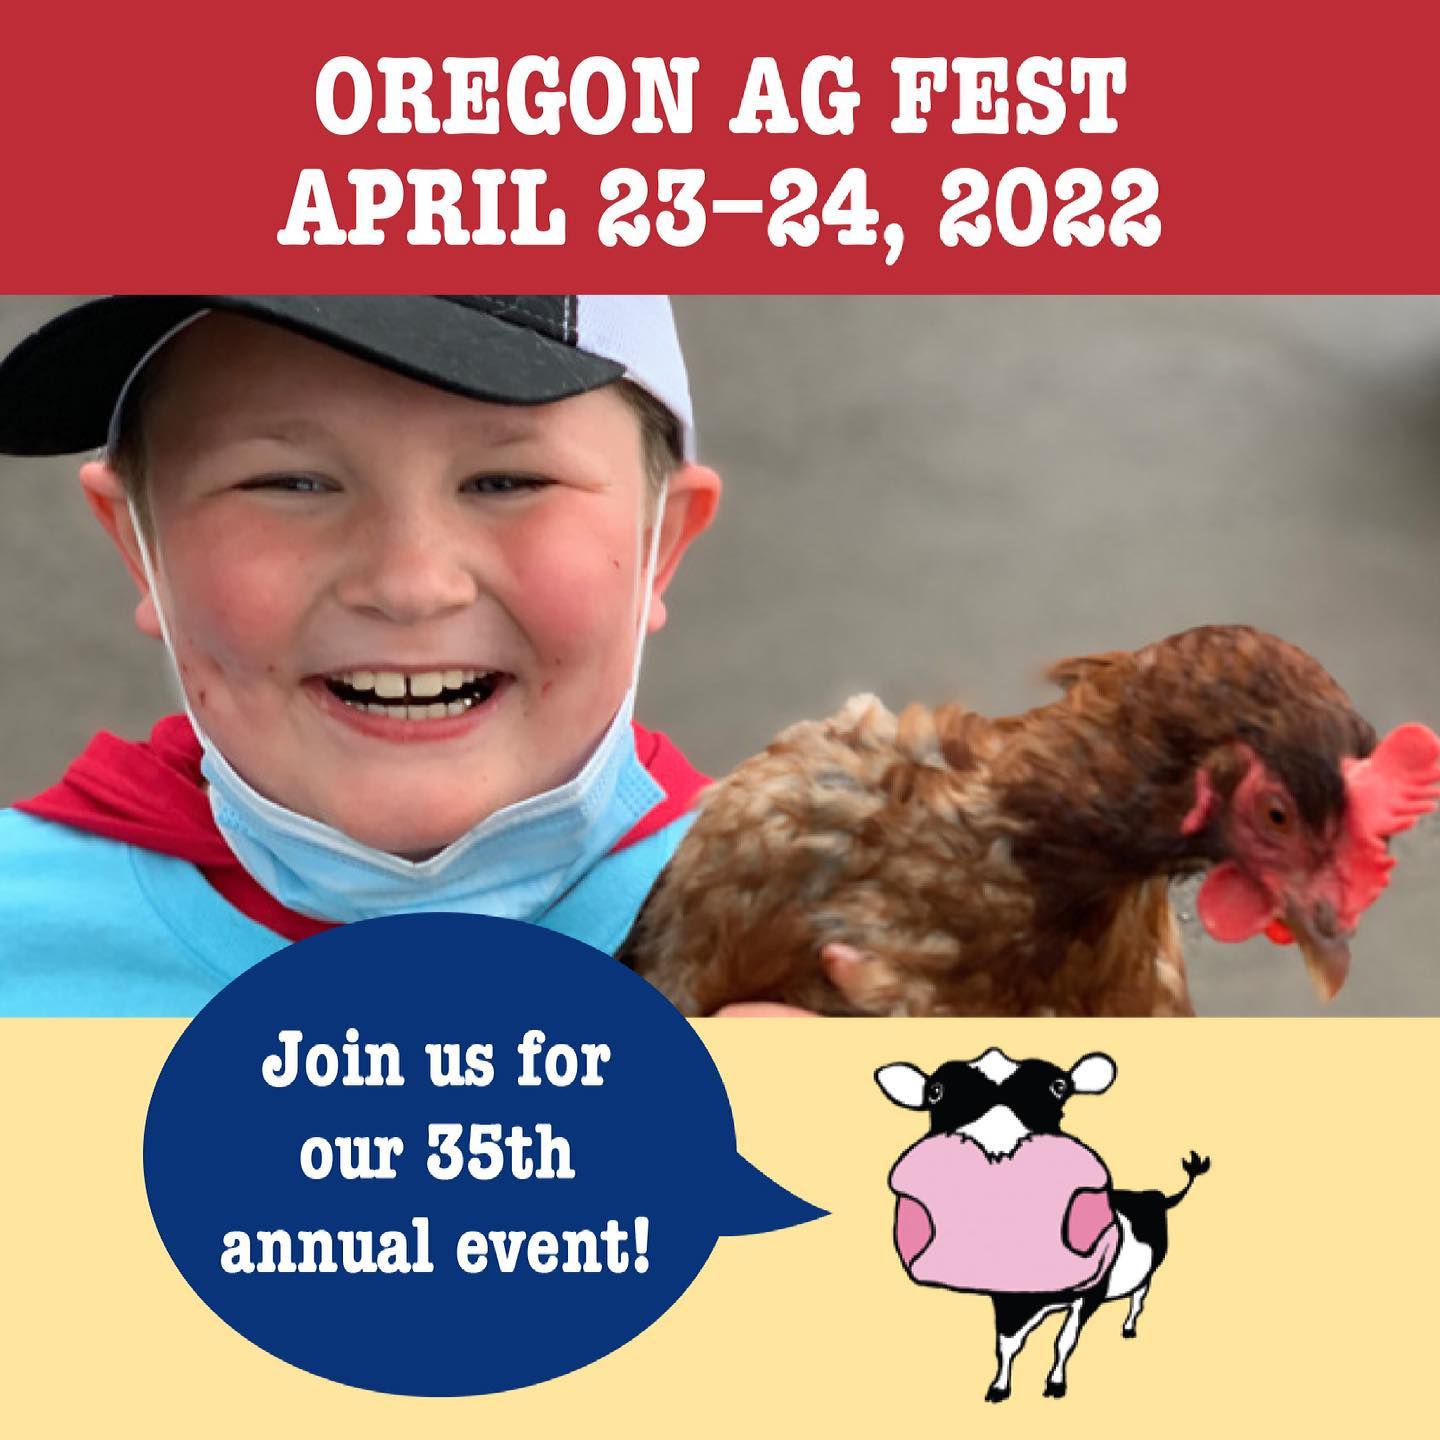 Oregon Ag Fest – April 23-24, 2022 at the Oregon State Fairground